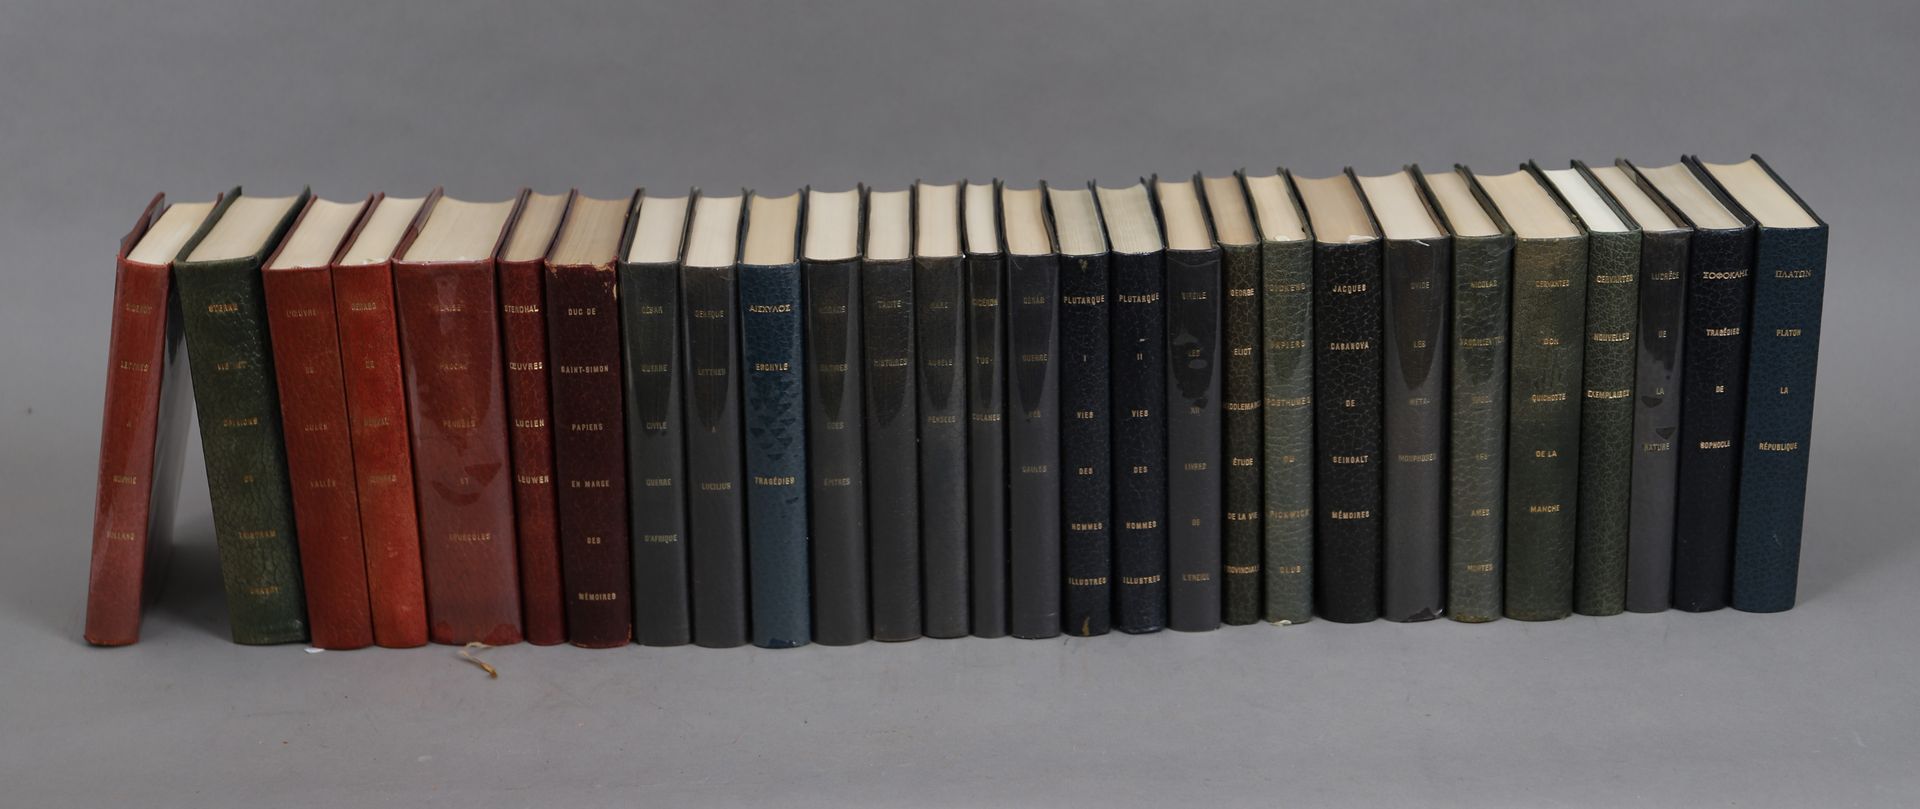 Null CLASSICI DELLA LETTERATURA

LOTTO di 28 volumi rilegati. 

1965.